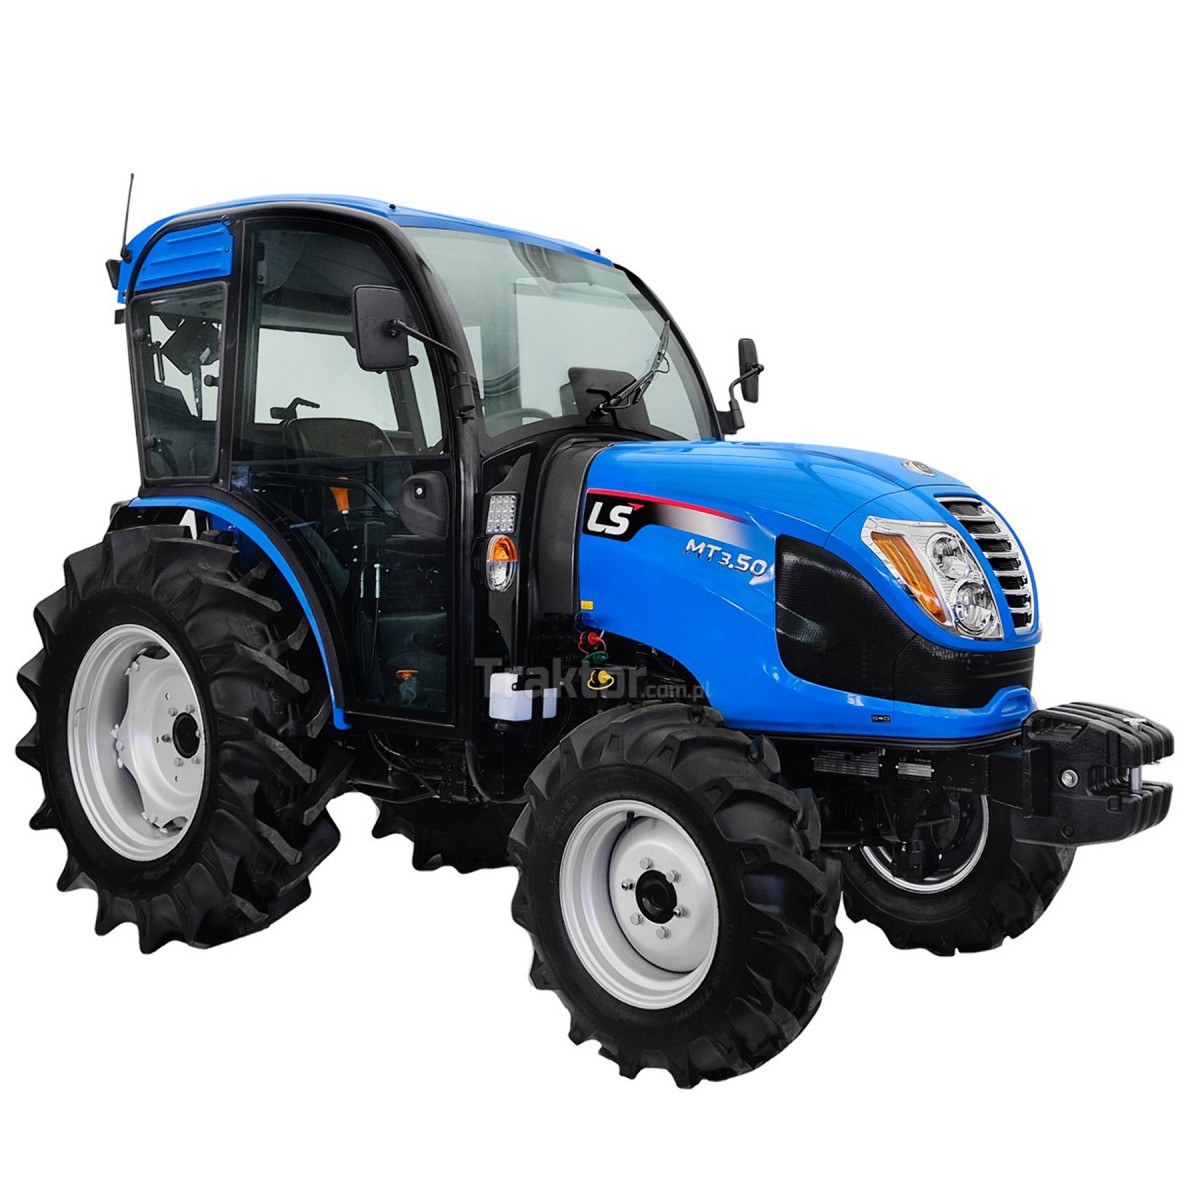 LS Traktor MT3.50 MEC 4x4 - 47 HP / CAB